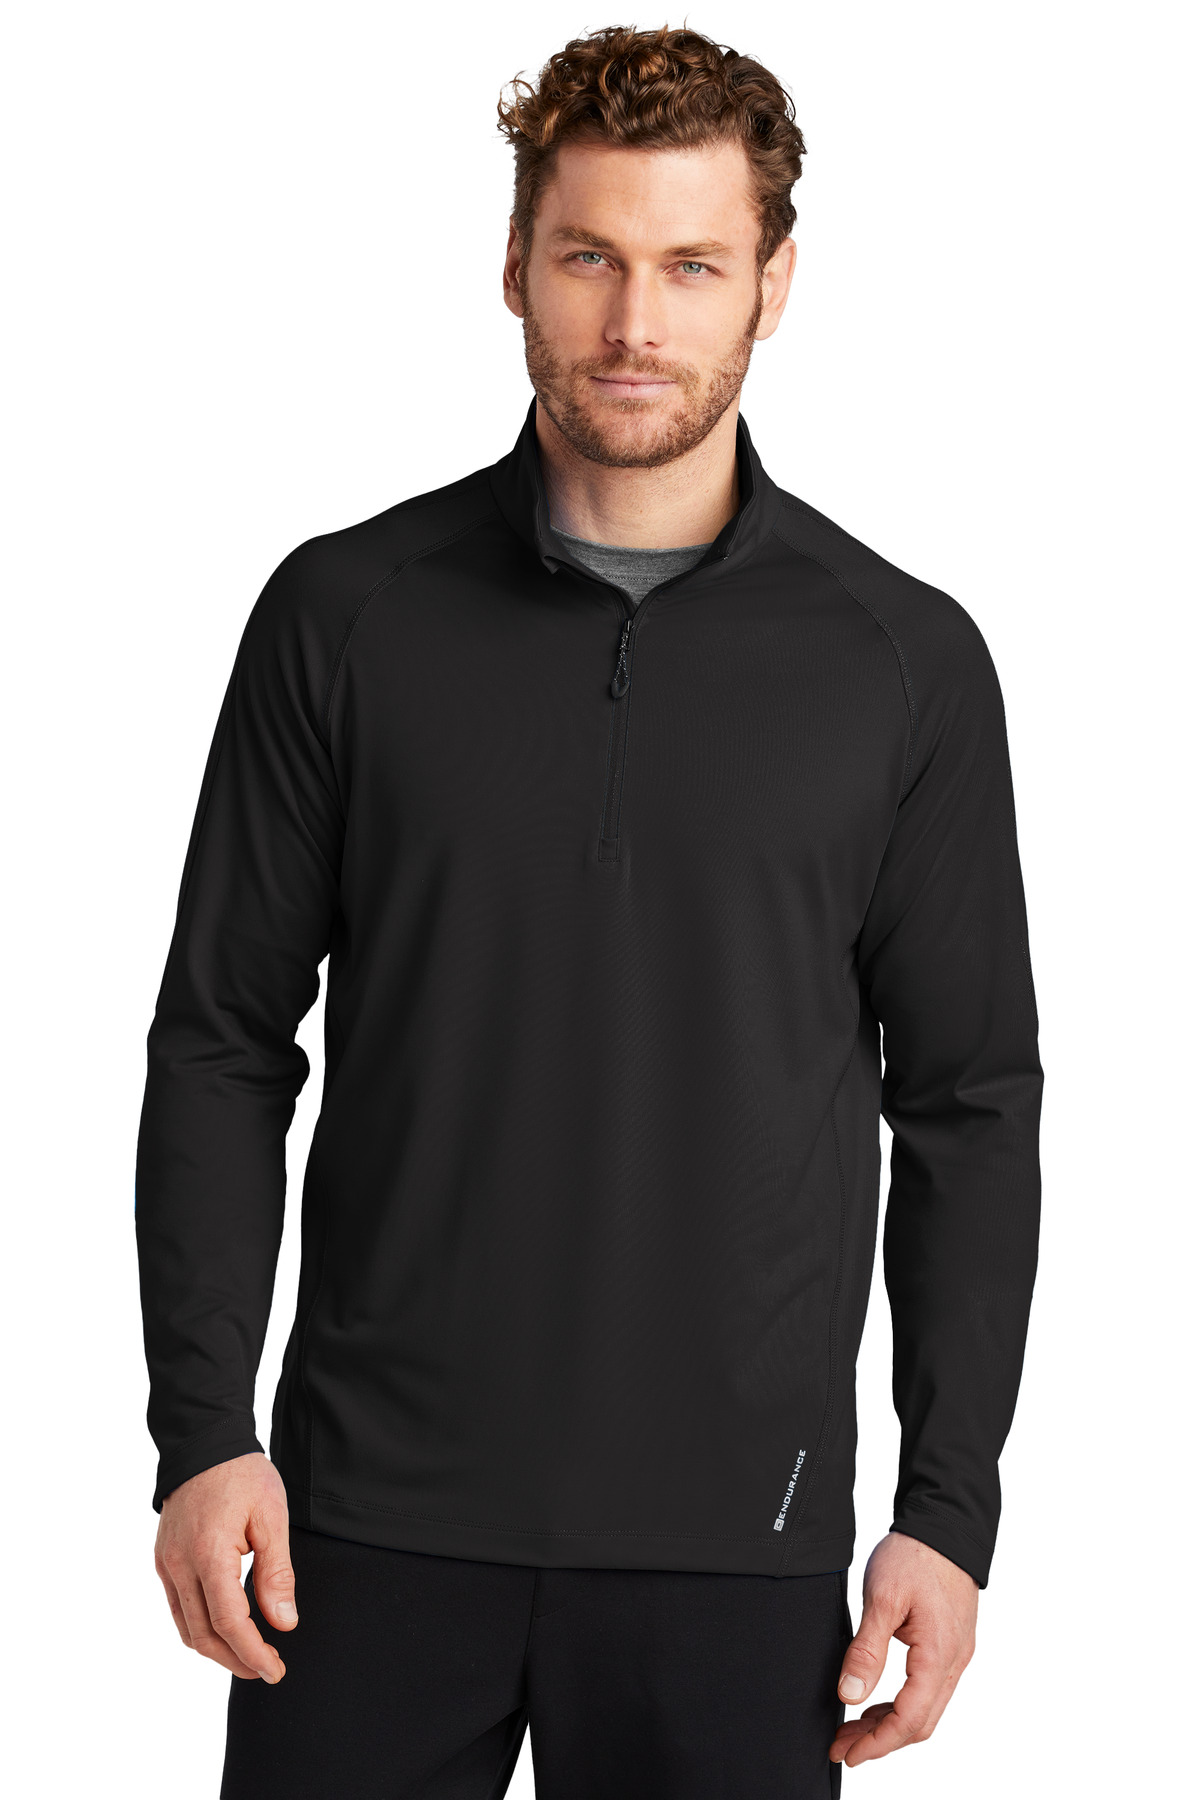 OGIO Hospitality Activewear Sweatshirts & Fleece ® ENDURANCE Radius 1/4-Zip.-OGIO